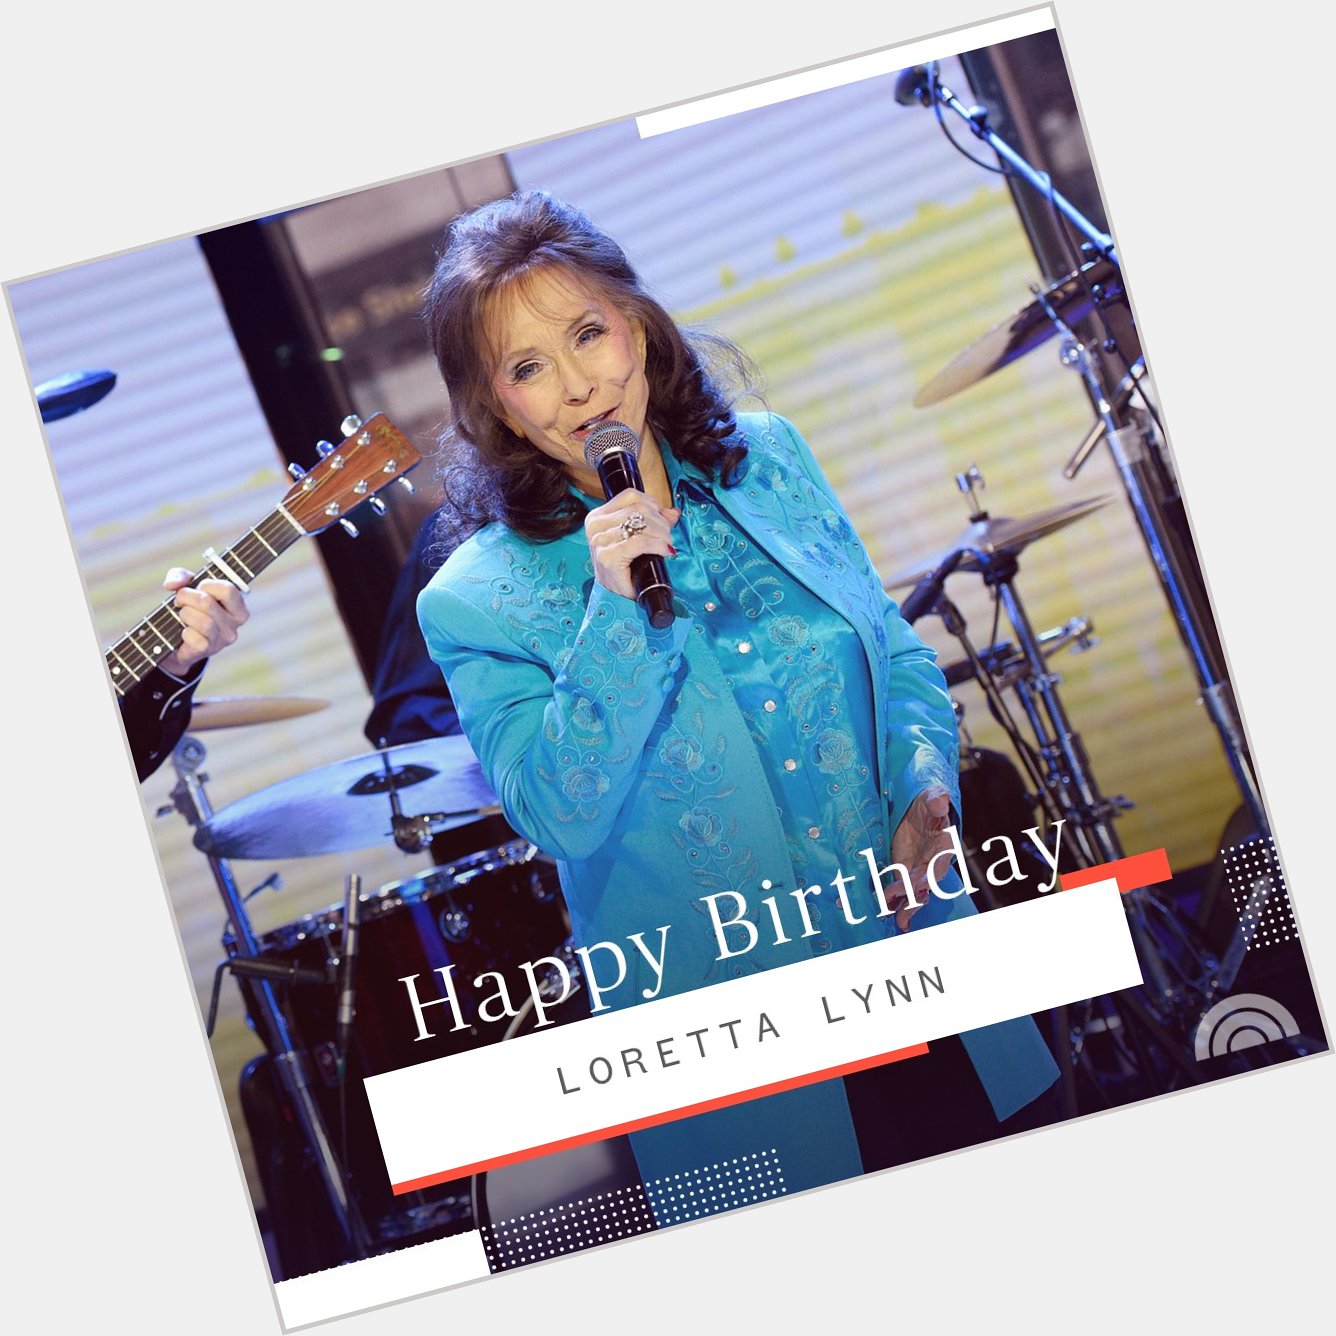 Happy birthday, Loretta Lynn! 